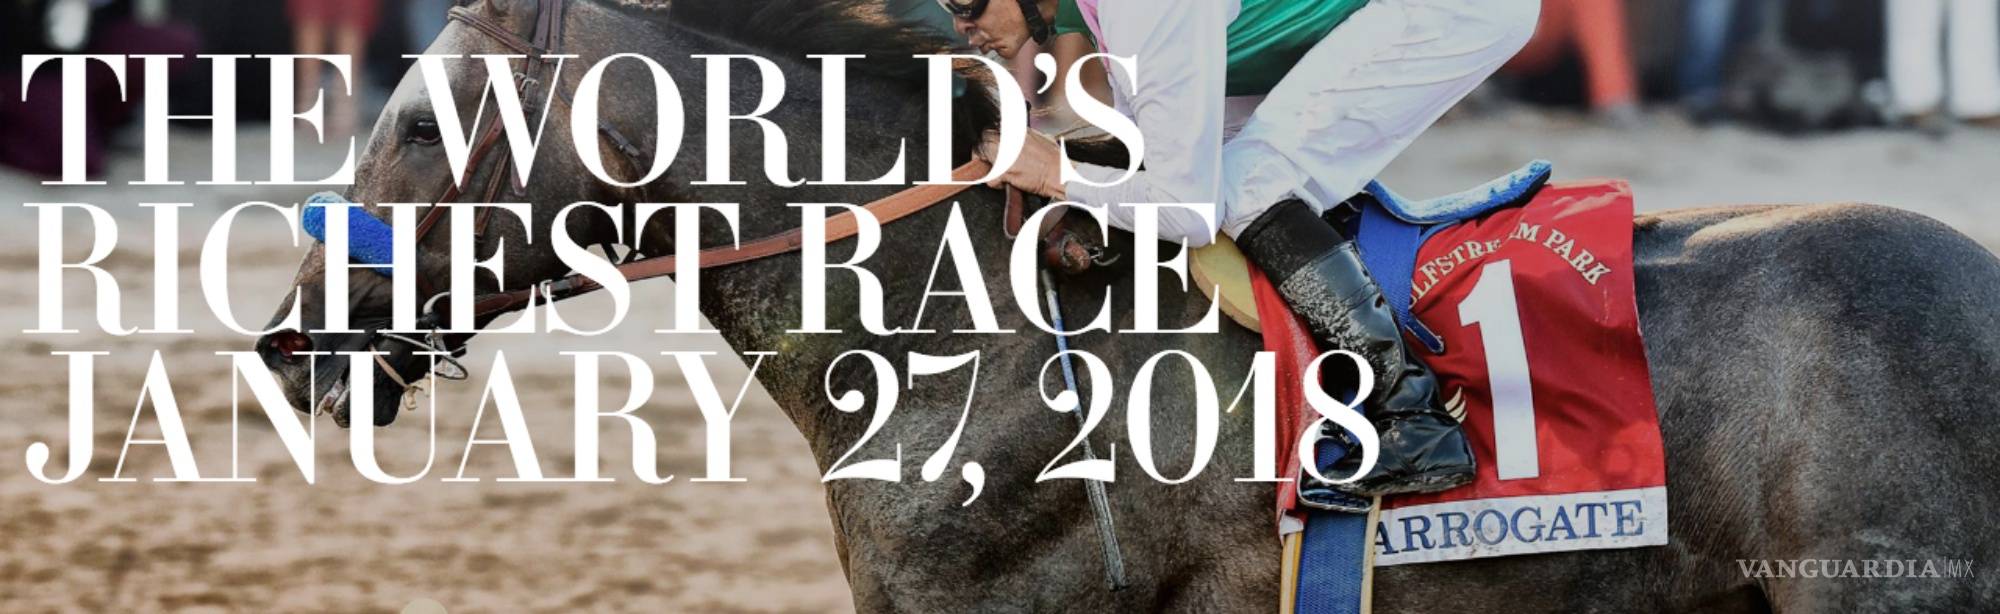 $!Copa Pegasus, la carrera de caballos más rica del mundo, tendrá jinetes latinos